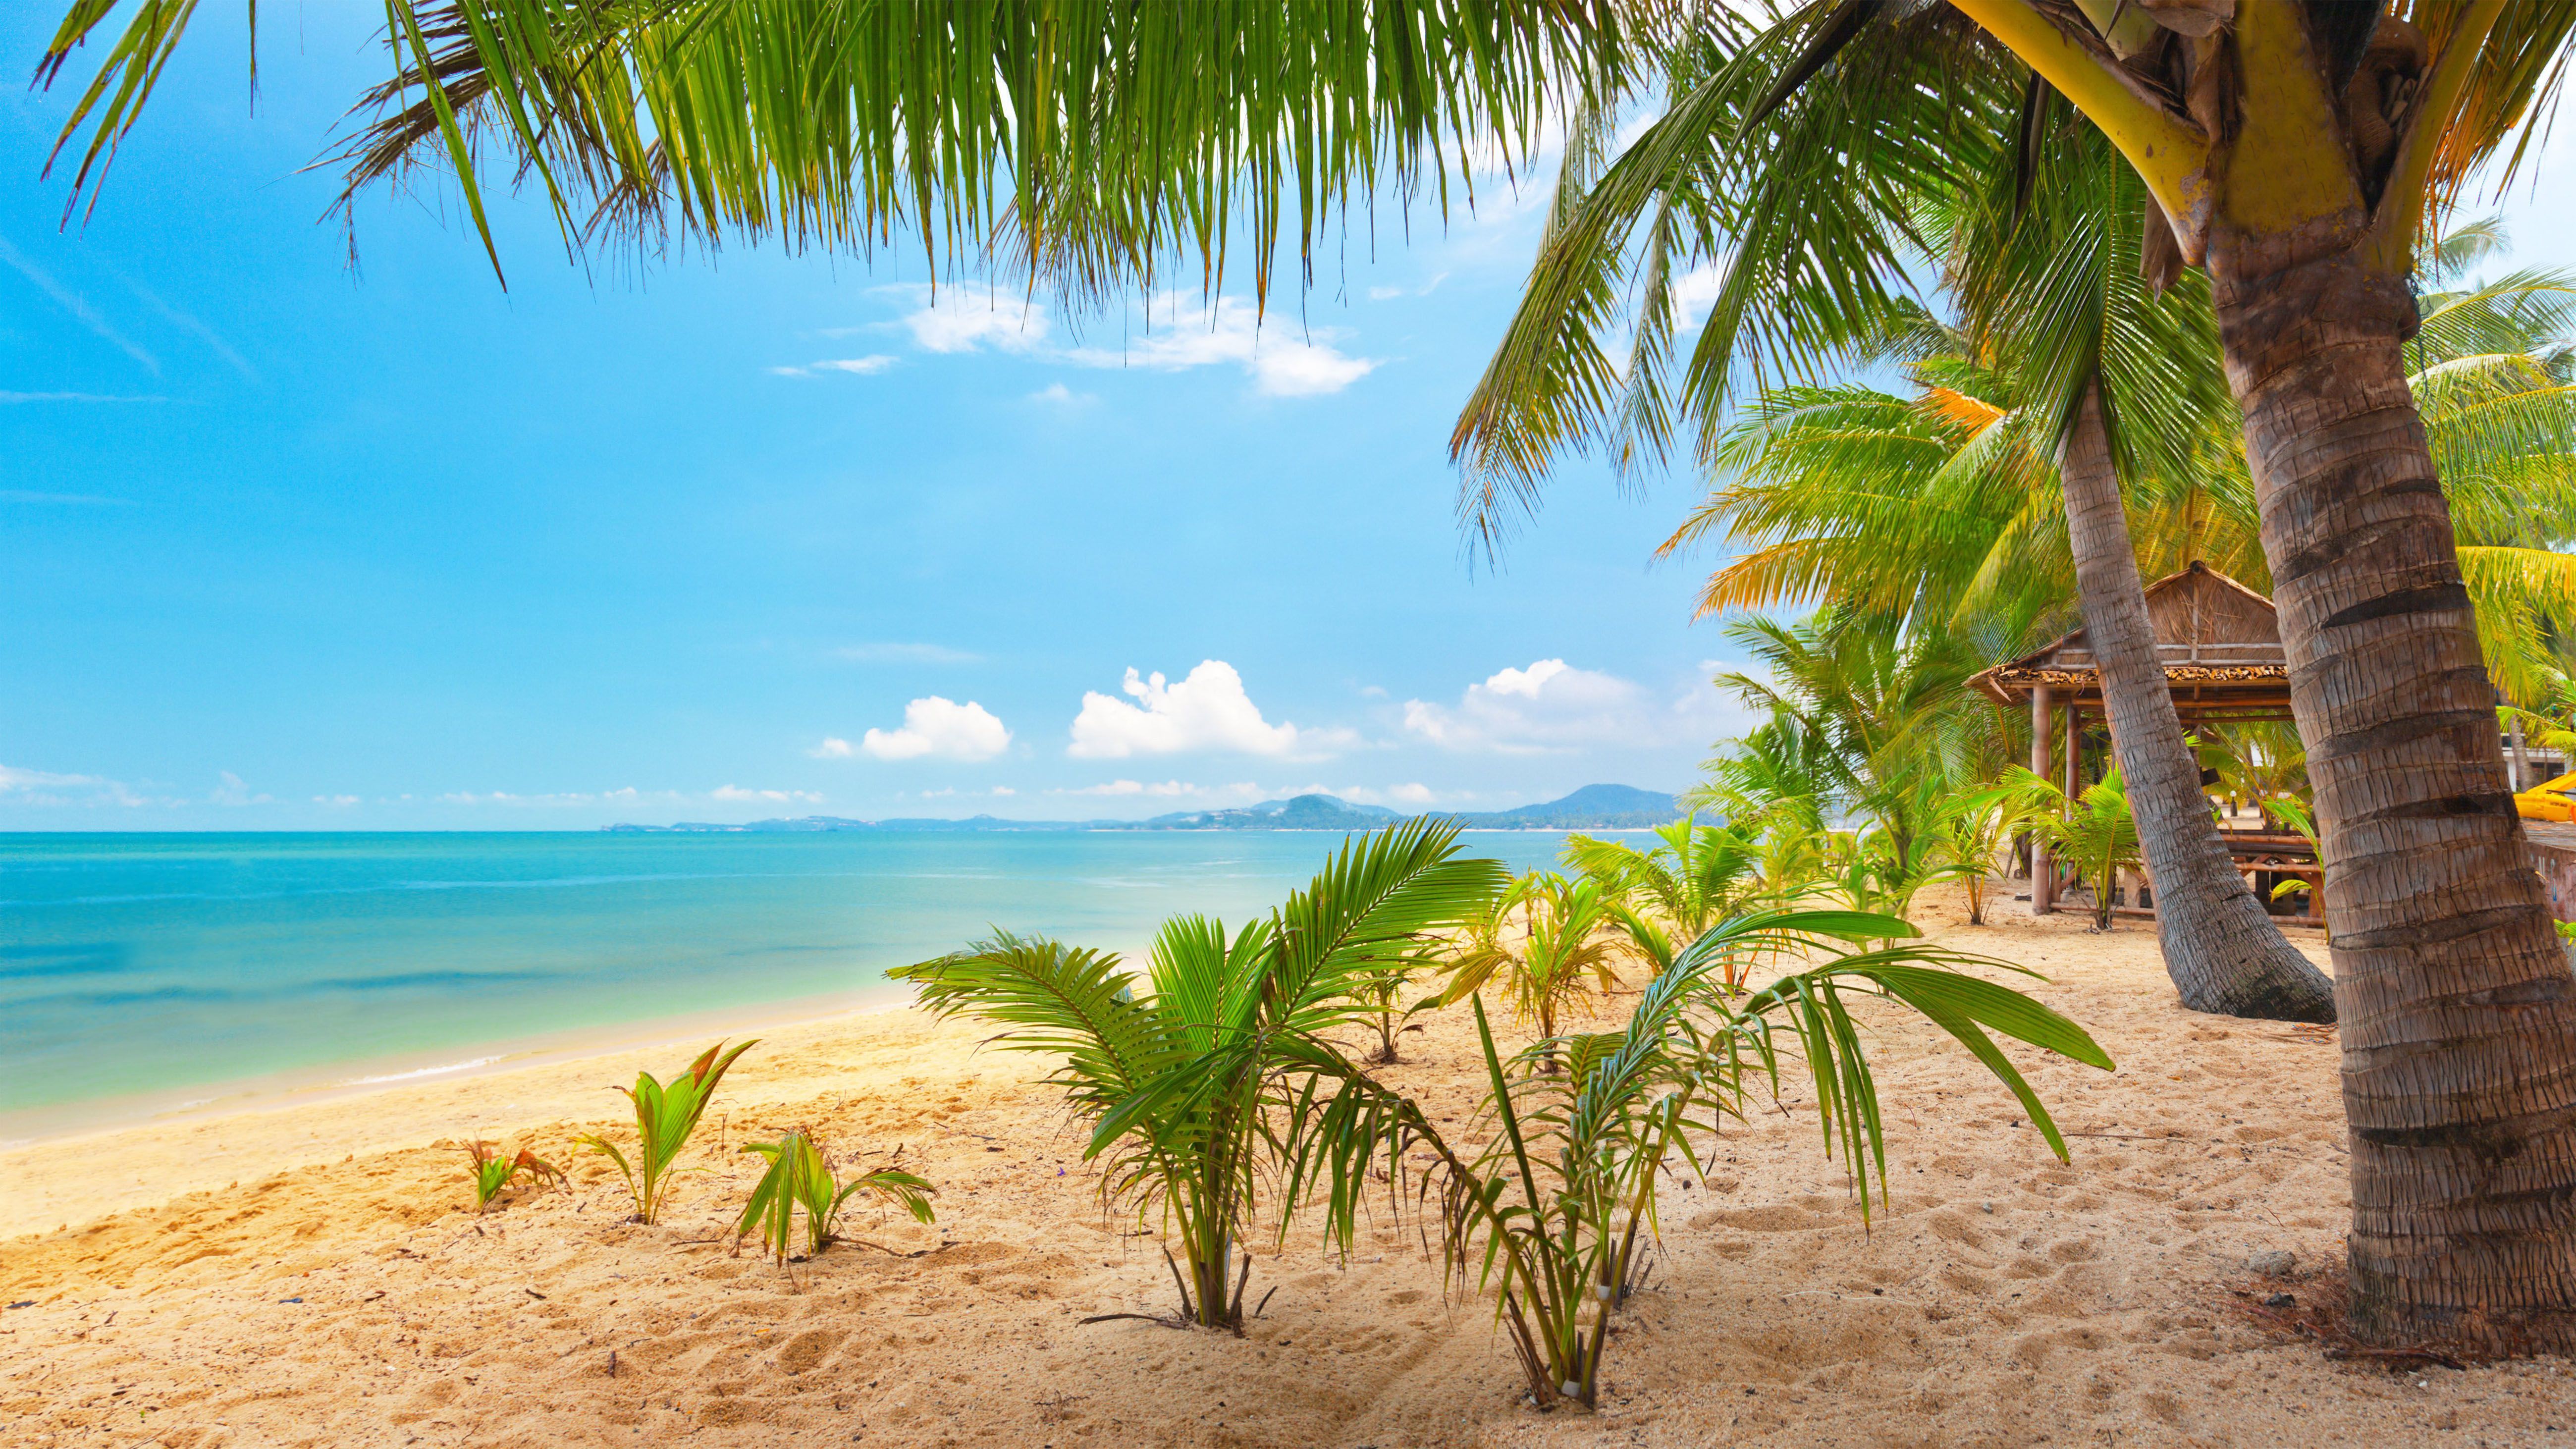 Blue Sea Ocean Beach Sand Palm Trees Summer Garden Summer Wallpaper HD 5200x2925, Wallpaper13.com